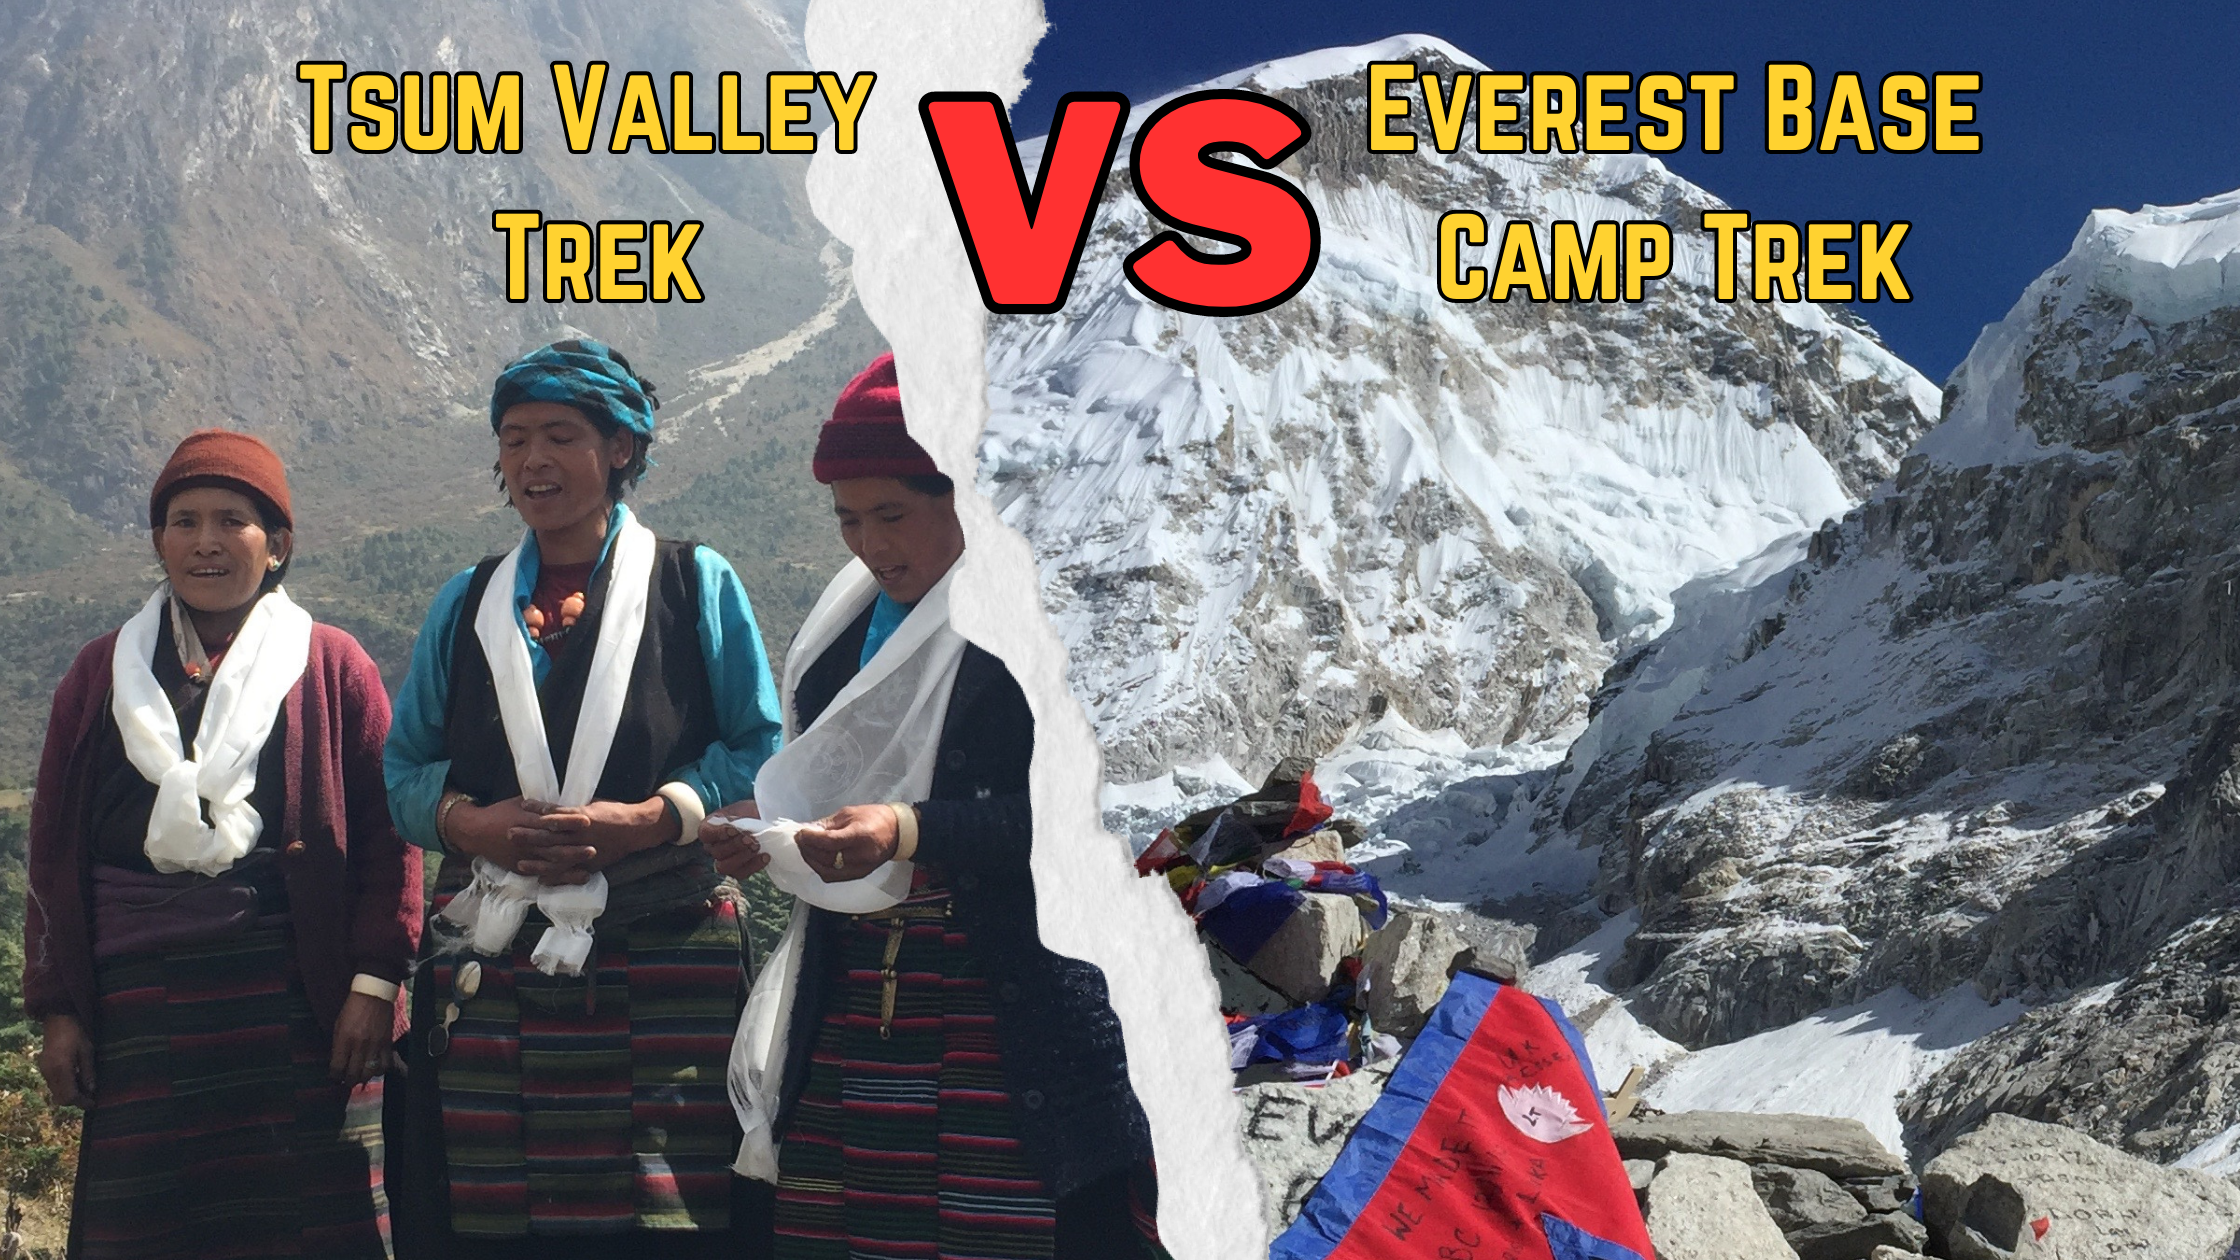 Tsum Valley Trek VS Everest Base Camp Trek